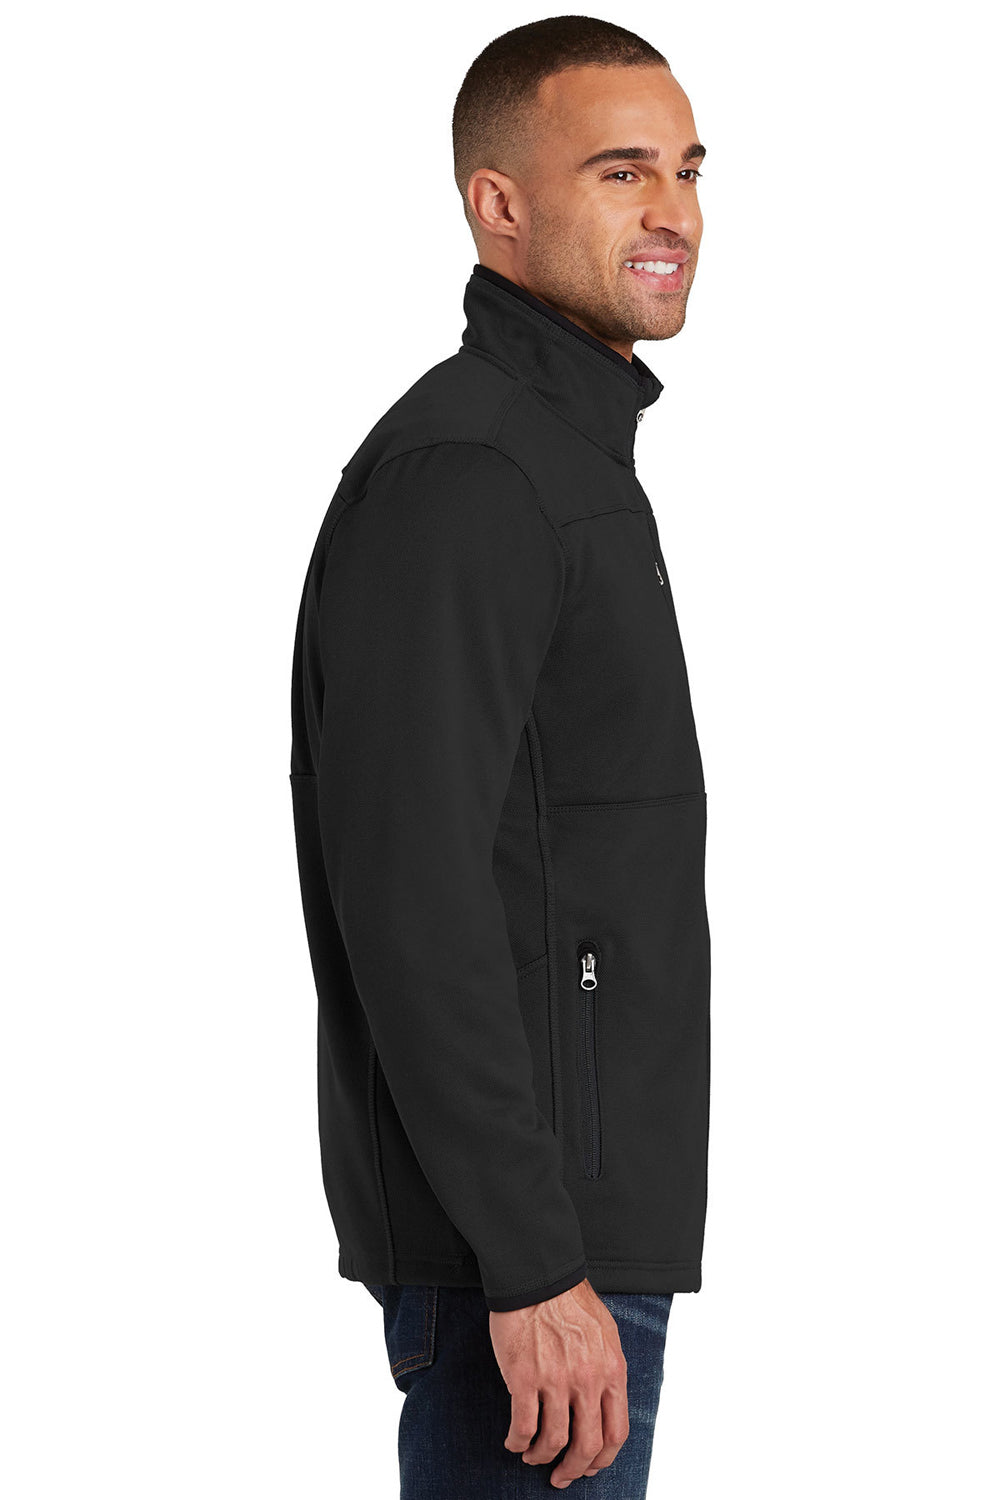 Port Authority F222 Mens Full Zip Fleece Jacket Black Side